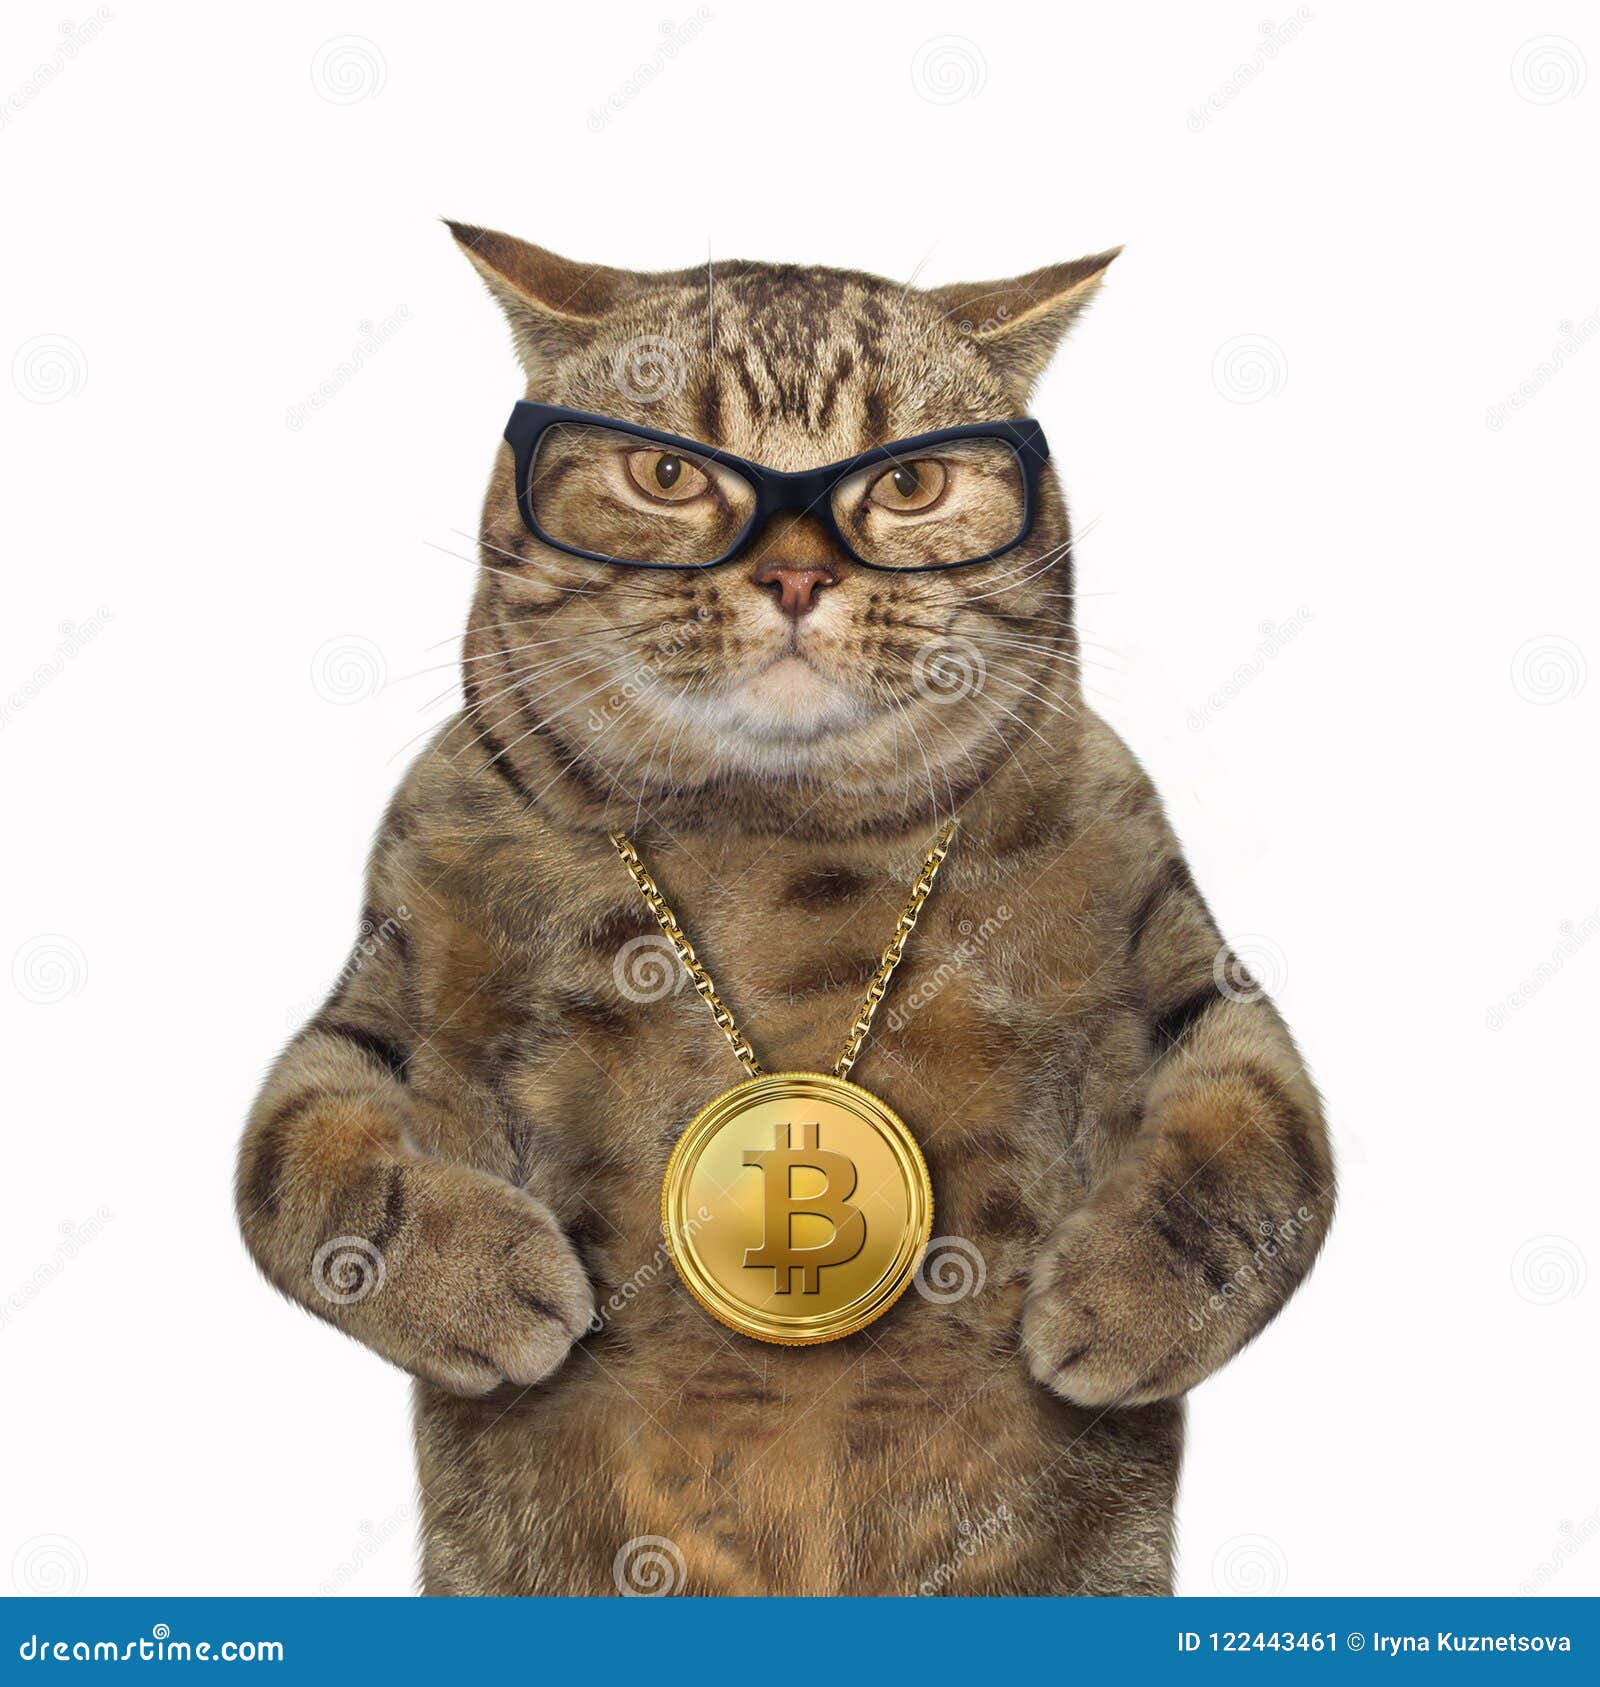 cats coin crypto